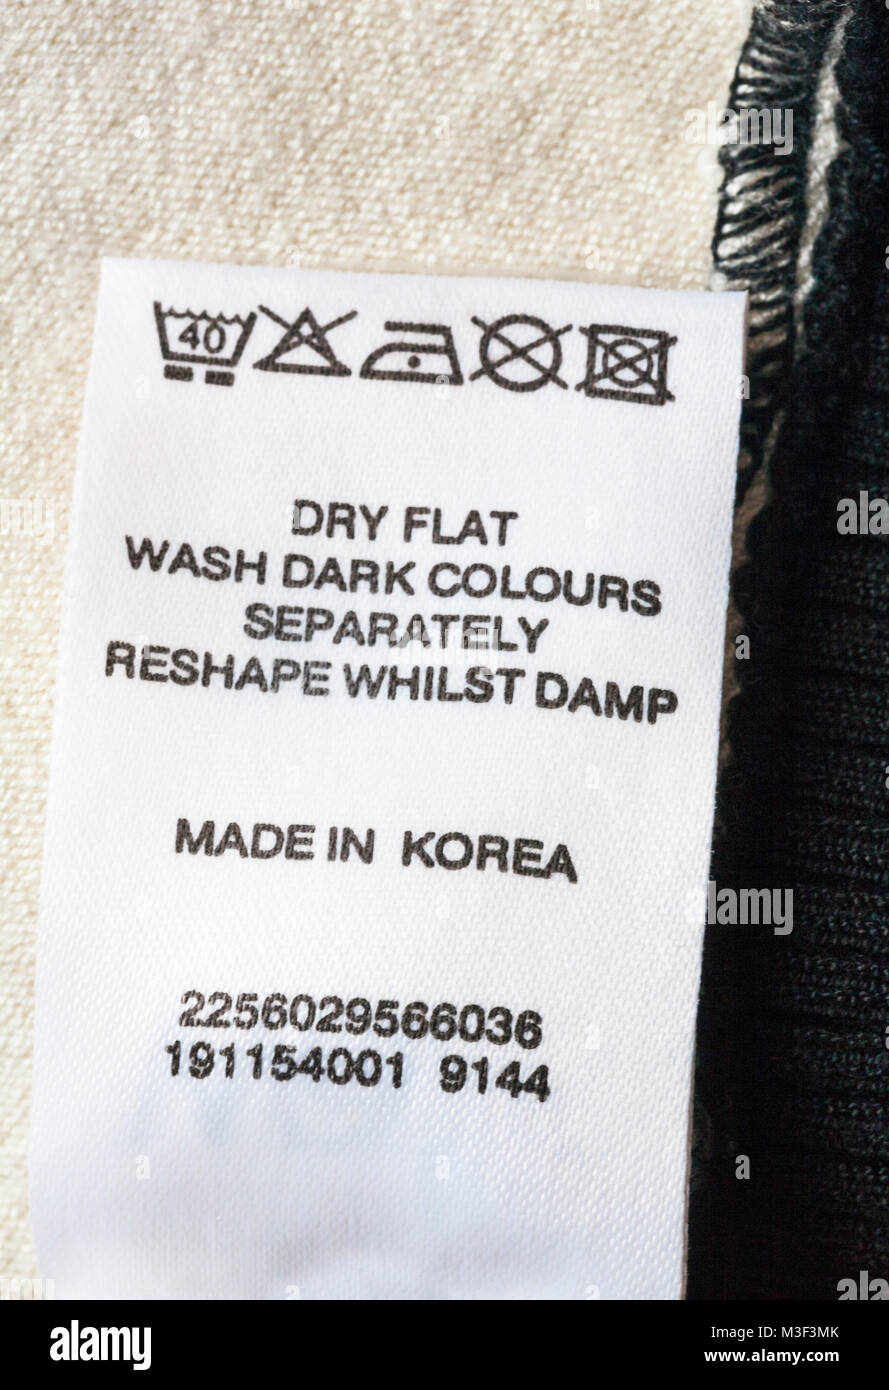 Waschen Pflegehinweise und Symbole auf dem Etikett Kleid Kleidung in Korea - Trocknen flach dunkle Farben separat waschen feucht Stützpunkte bearbeiten Stockfoto